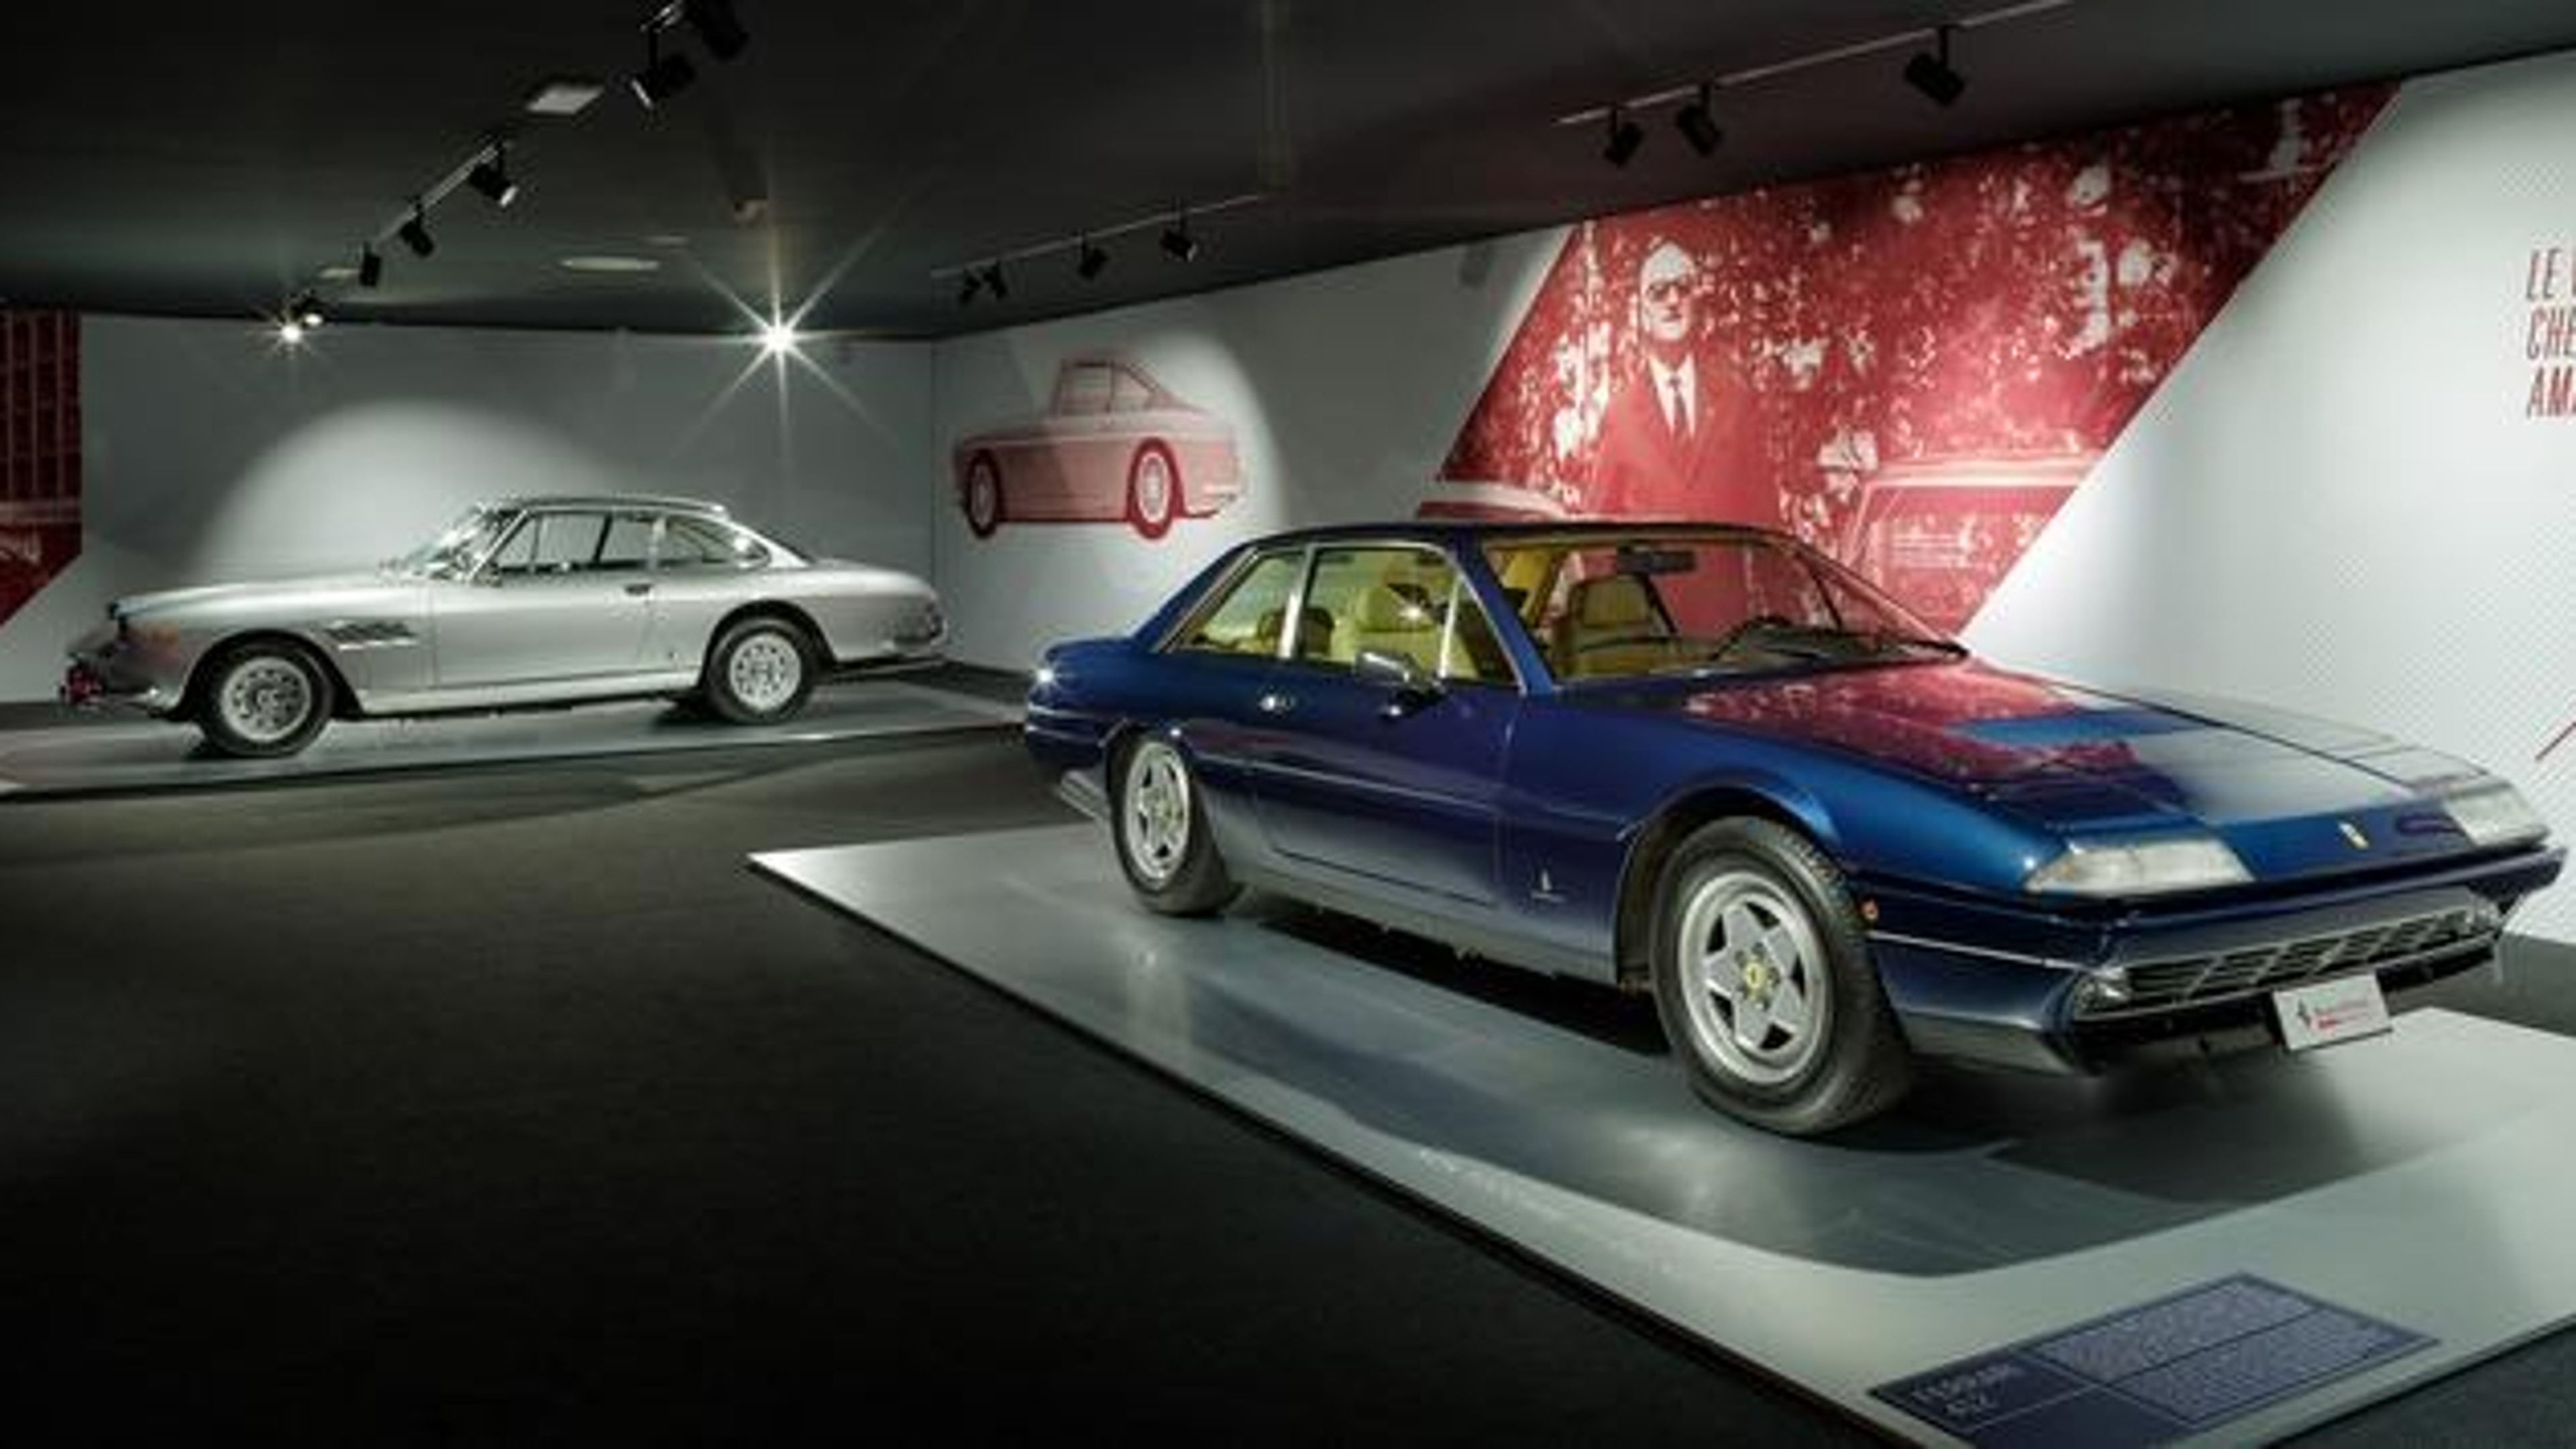 Modelos del Driven by Enzo y Passion and Legend, exposiciones de Ferrari